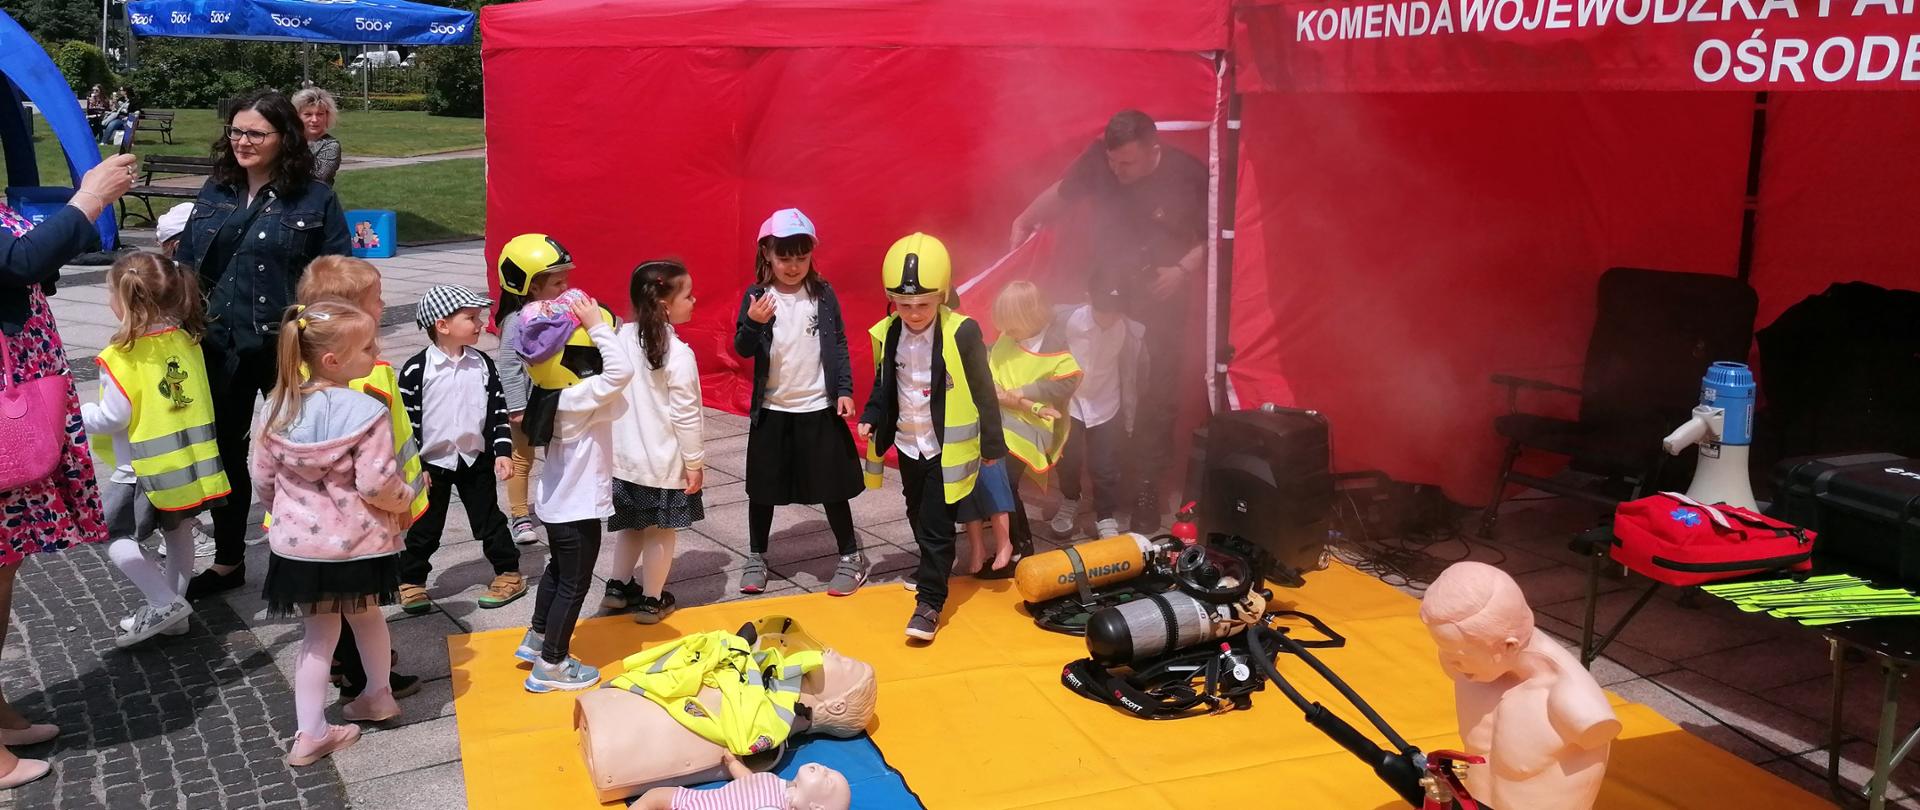 Na zdjęciu grupa dzieci zwiedzające stoisko Państwowej Straży Pożarnej na pikniku rodzinnym. Na stoisku wyeksponowane fantomy do prowadzenia szkolenia z pierwszej pomocy oraz aparaty powietrzne